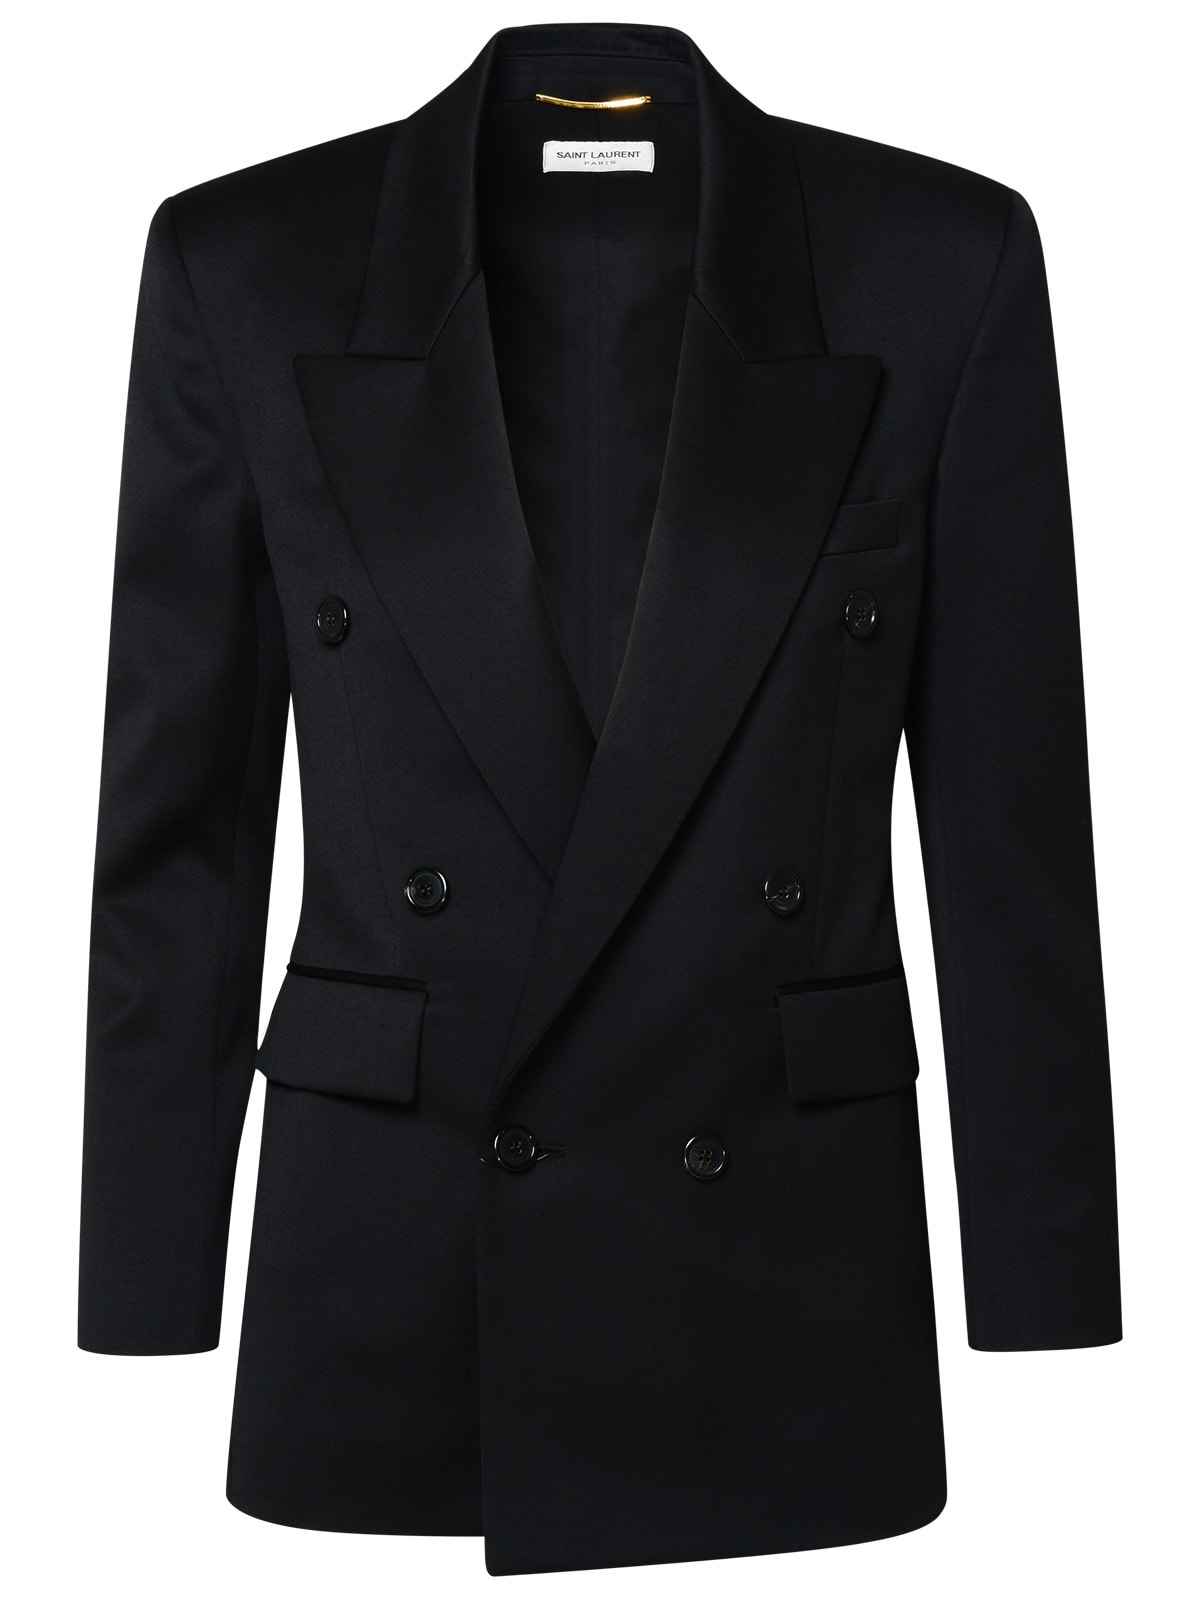 Saint Laurent Black Cotton Blazer Jacket